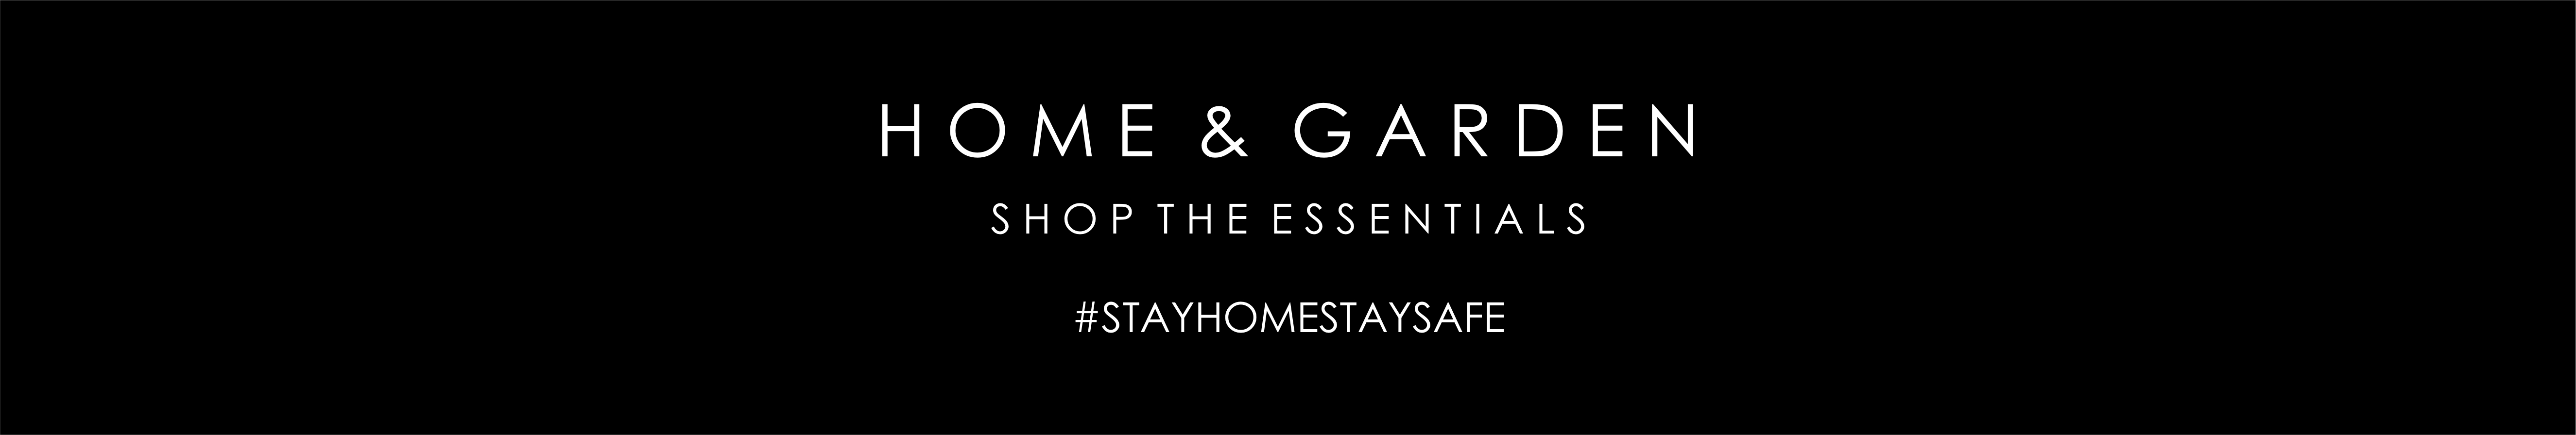 home-garden-essentials-banner.jpg